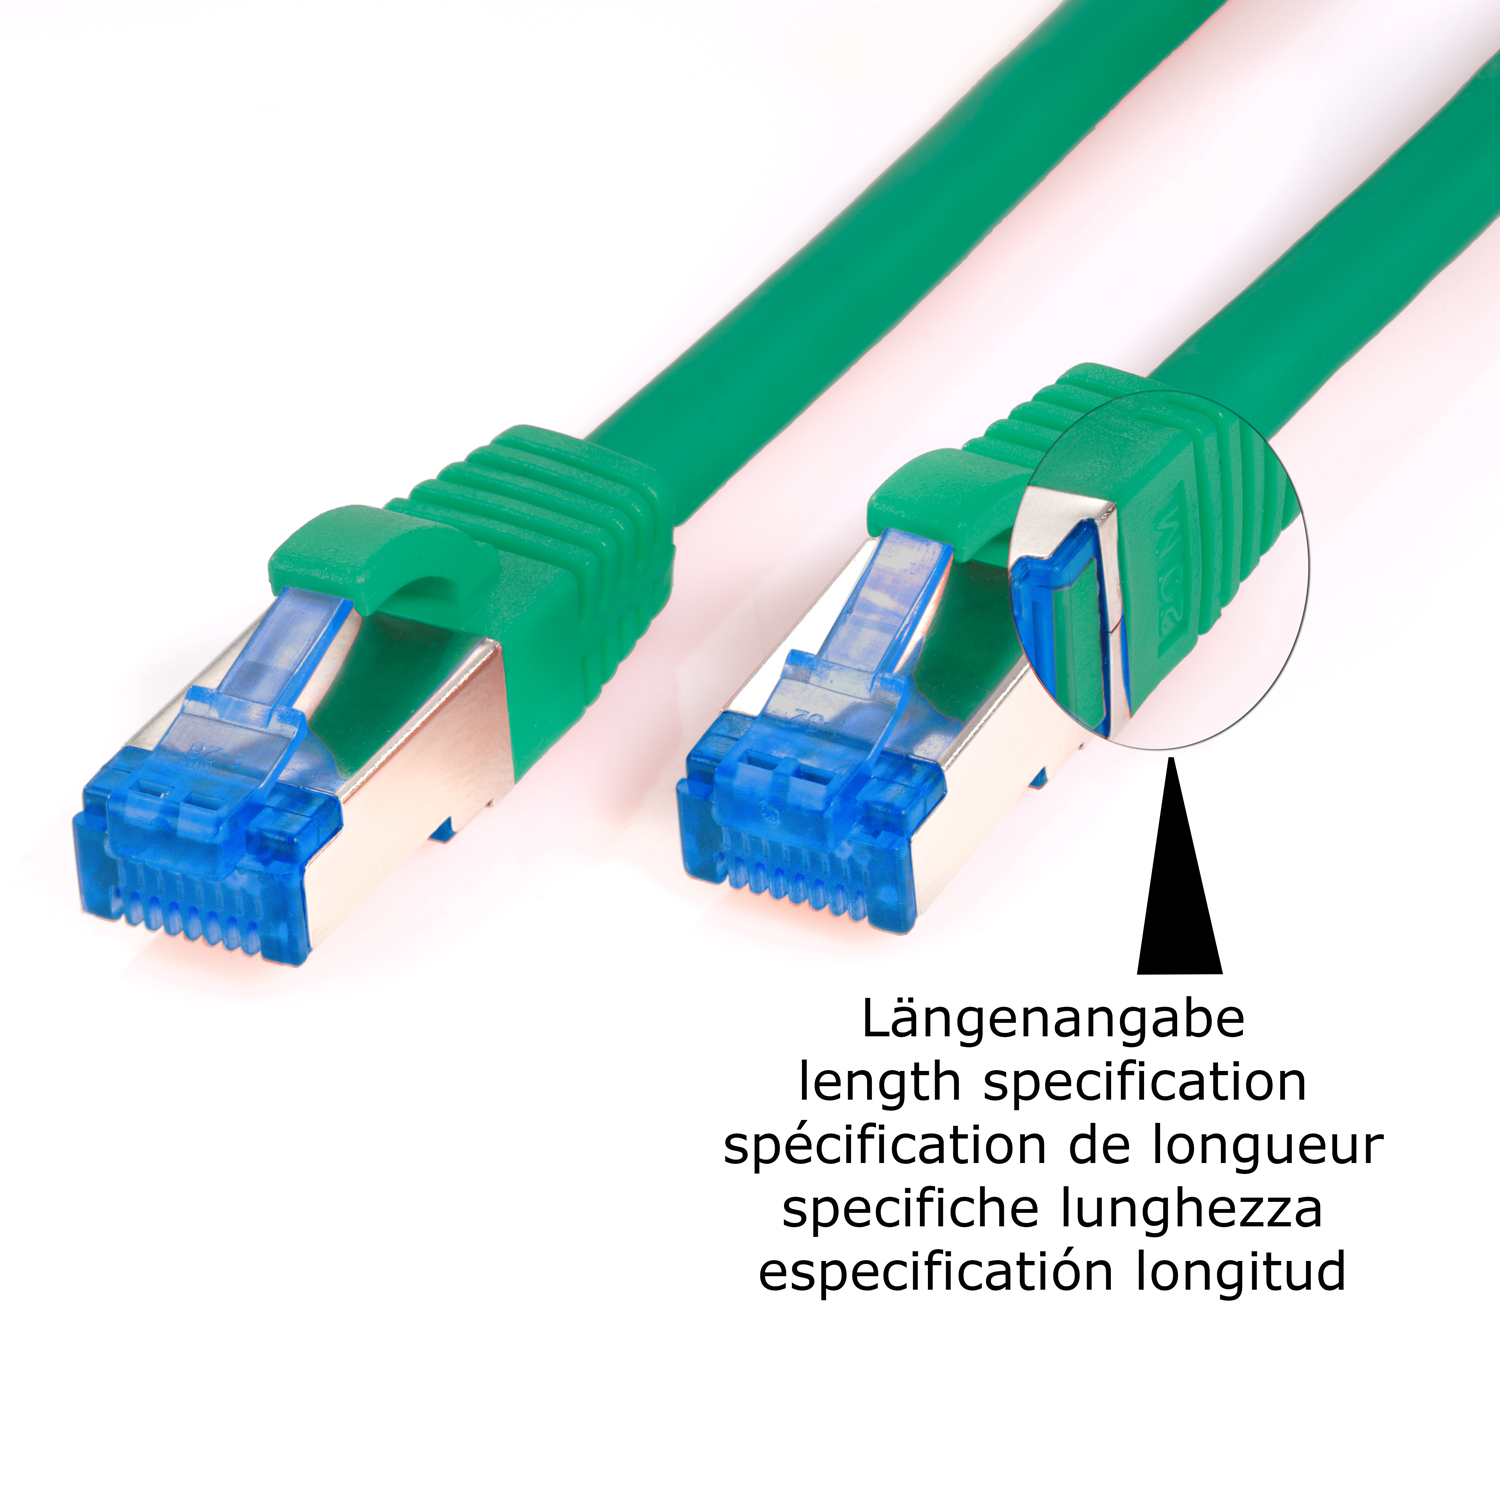 Patchkabel S/FTP 10 Netzwerkkabel, grün, / 10GBit, 10m TPFNET Netzwerkkabel m